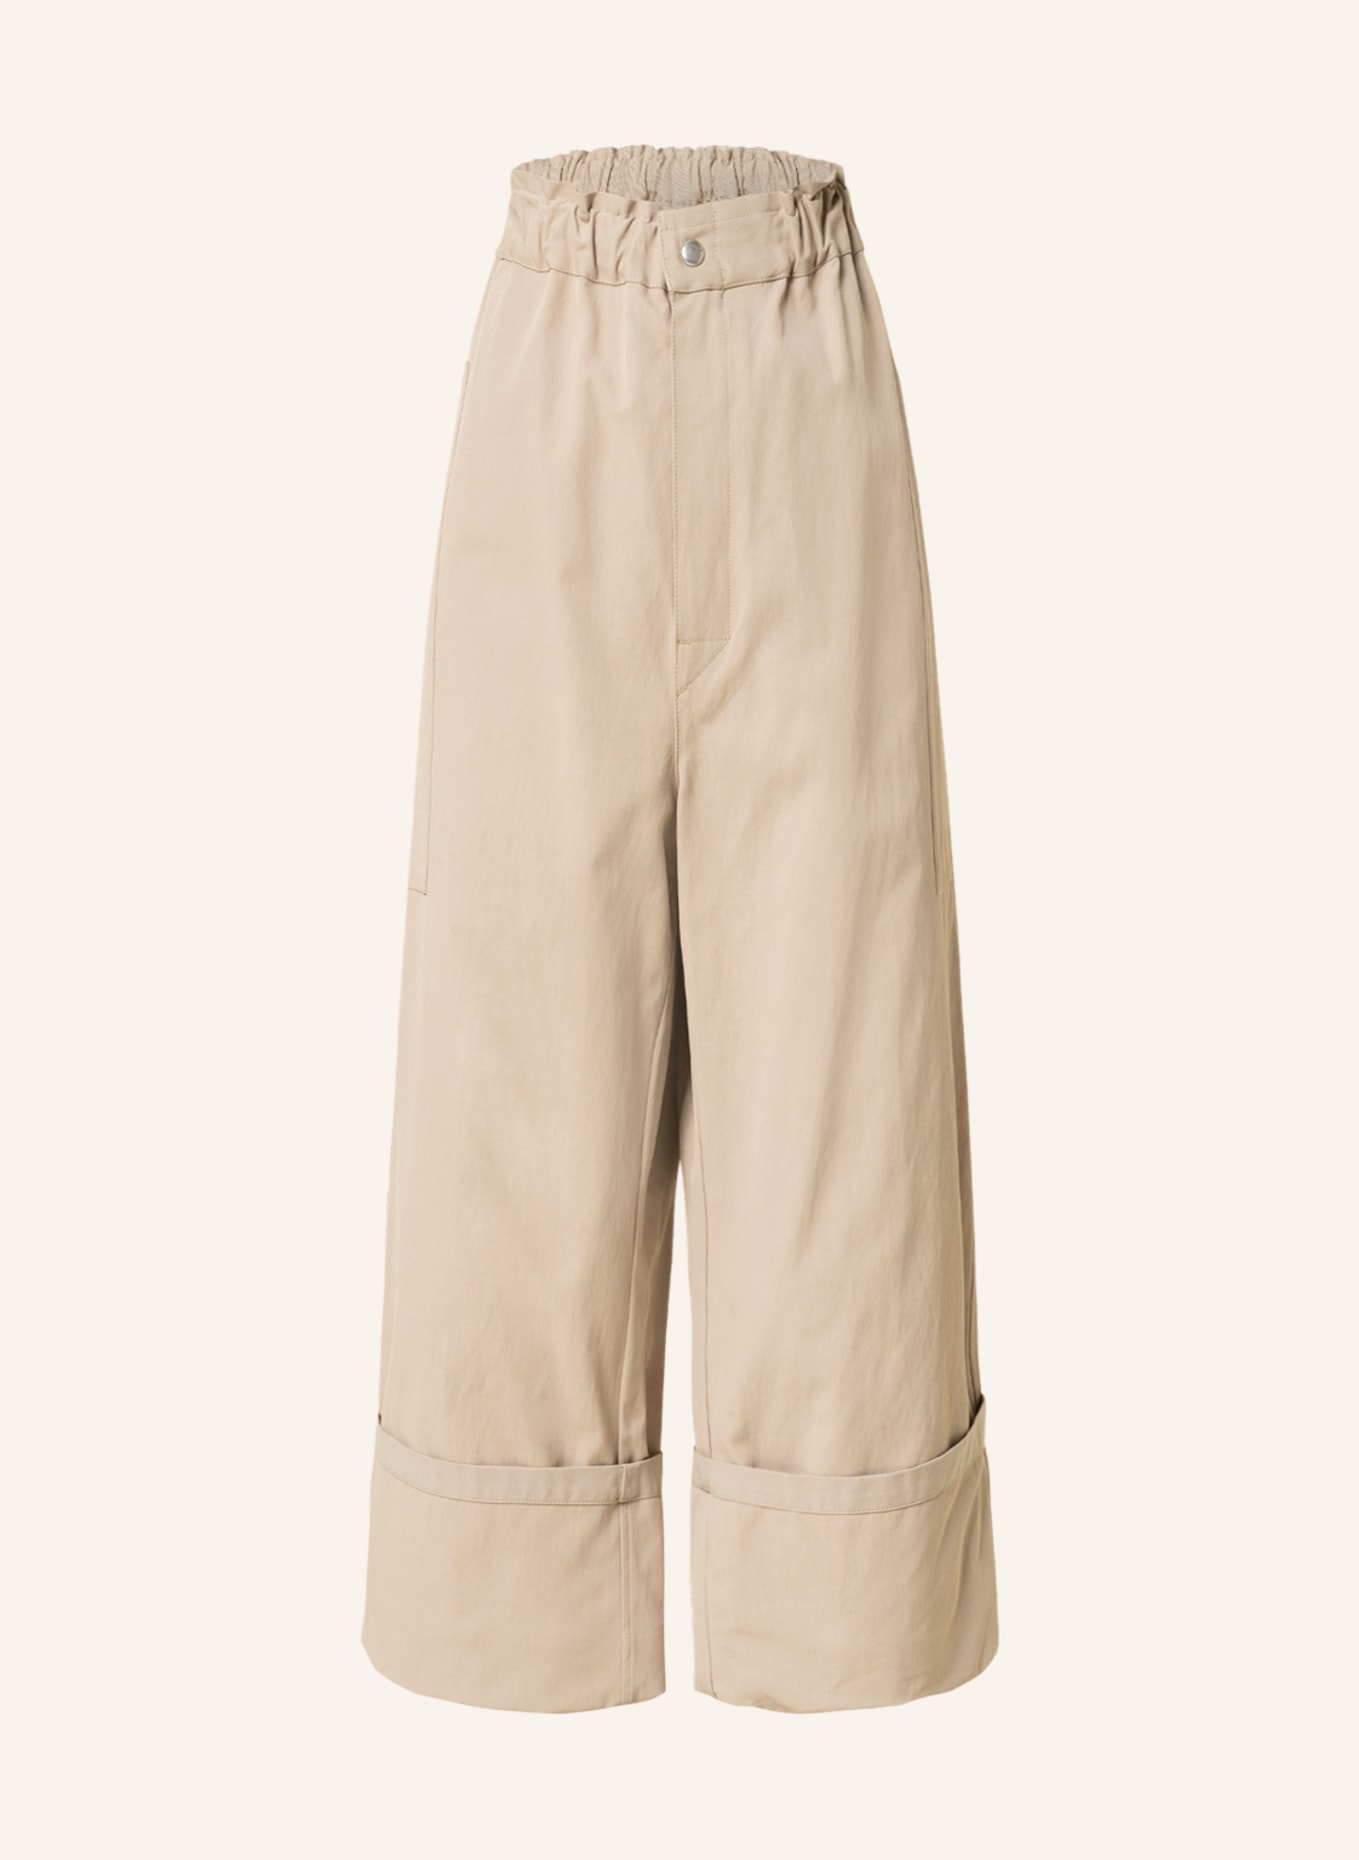 MONCLER GENIUS 7/8 trousers, Color: CAMEL (Image 1)